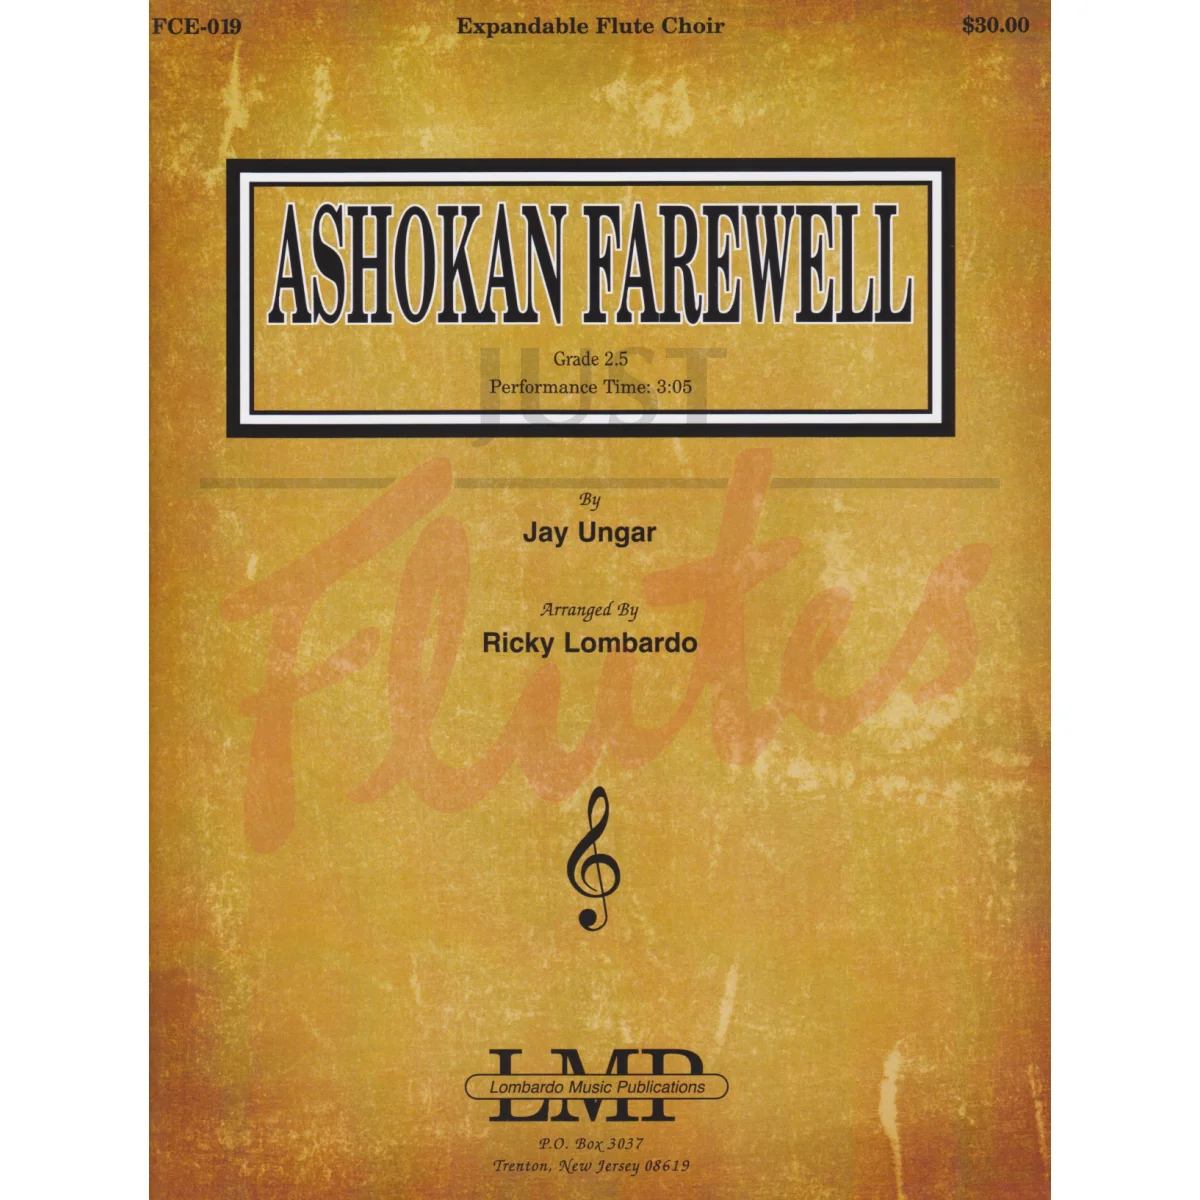 Ashokan Farewell for Flute Choir